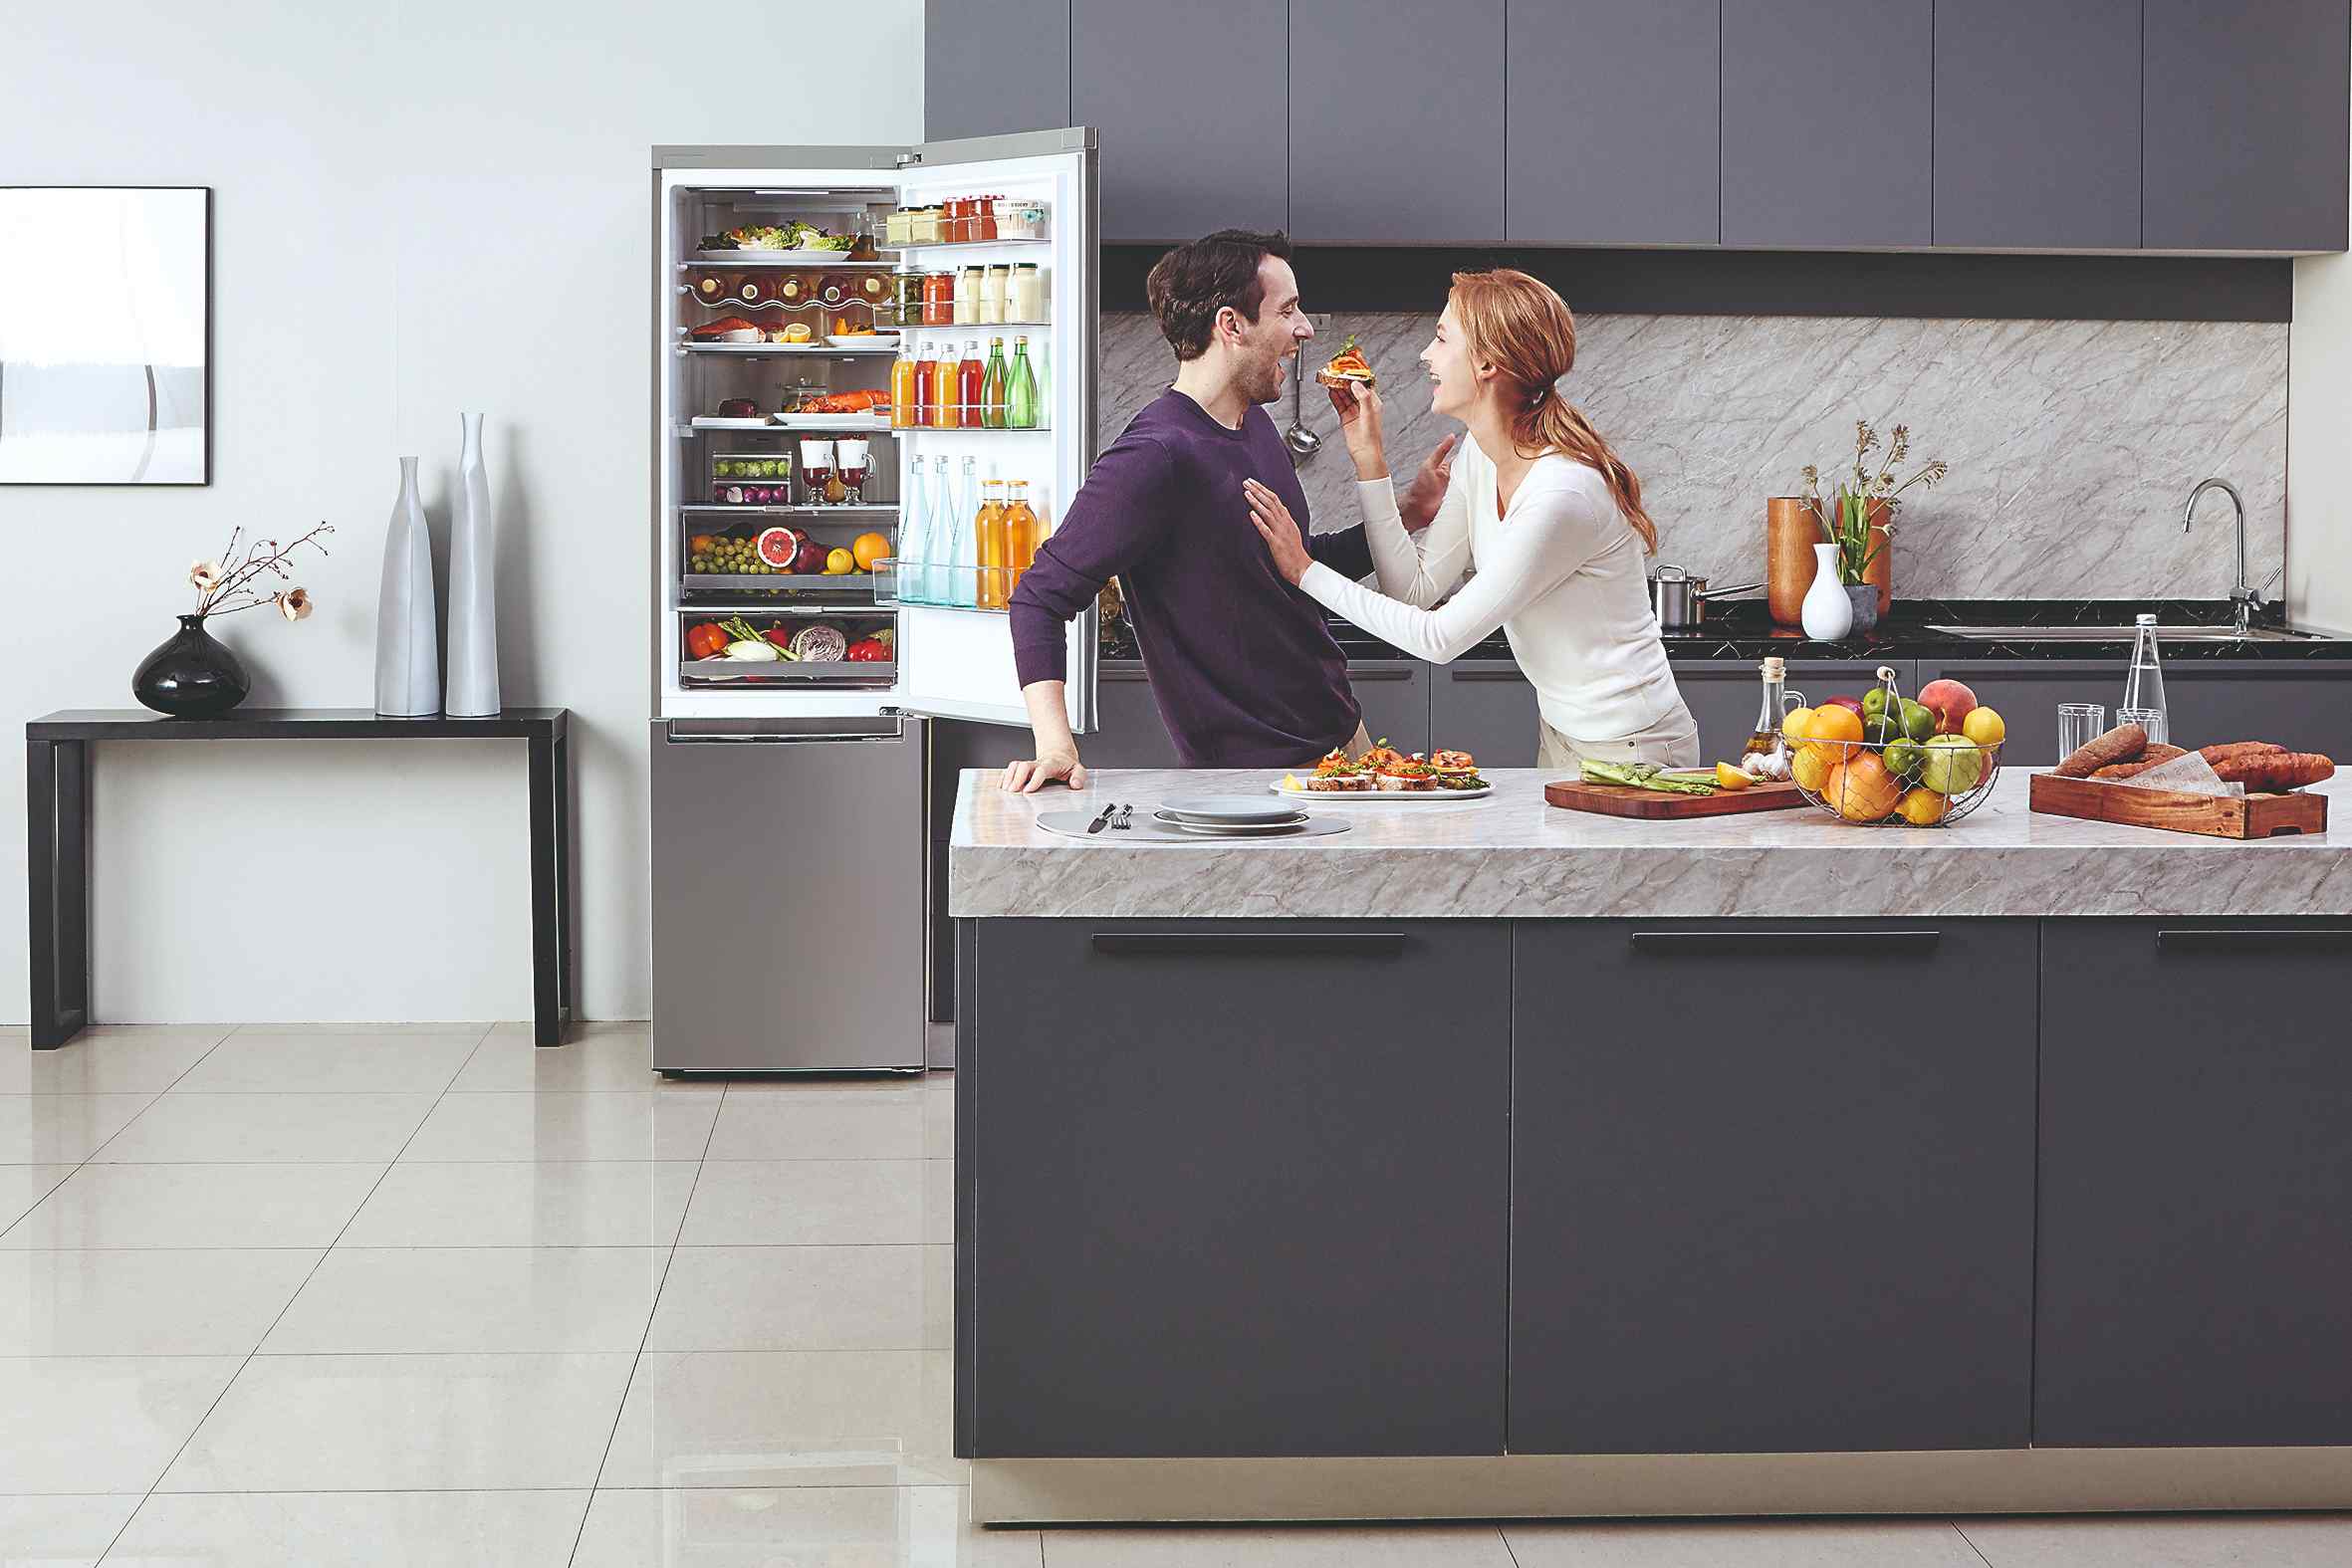 Muž a žena v kuchyni pri otvorenej chladničke